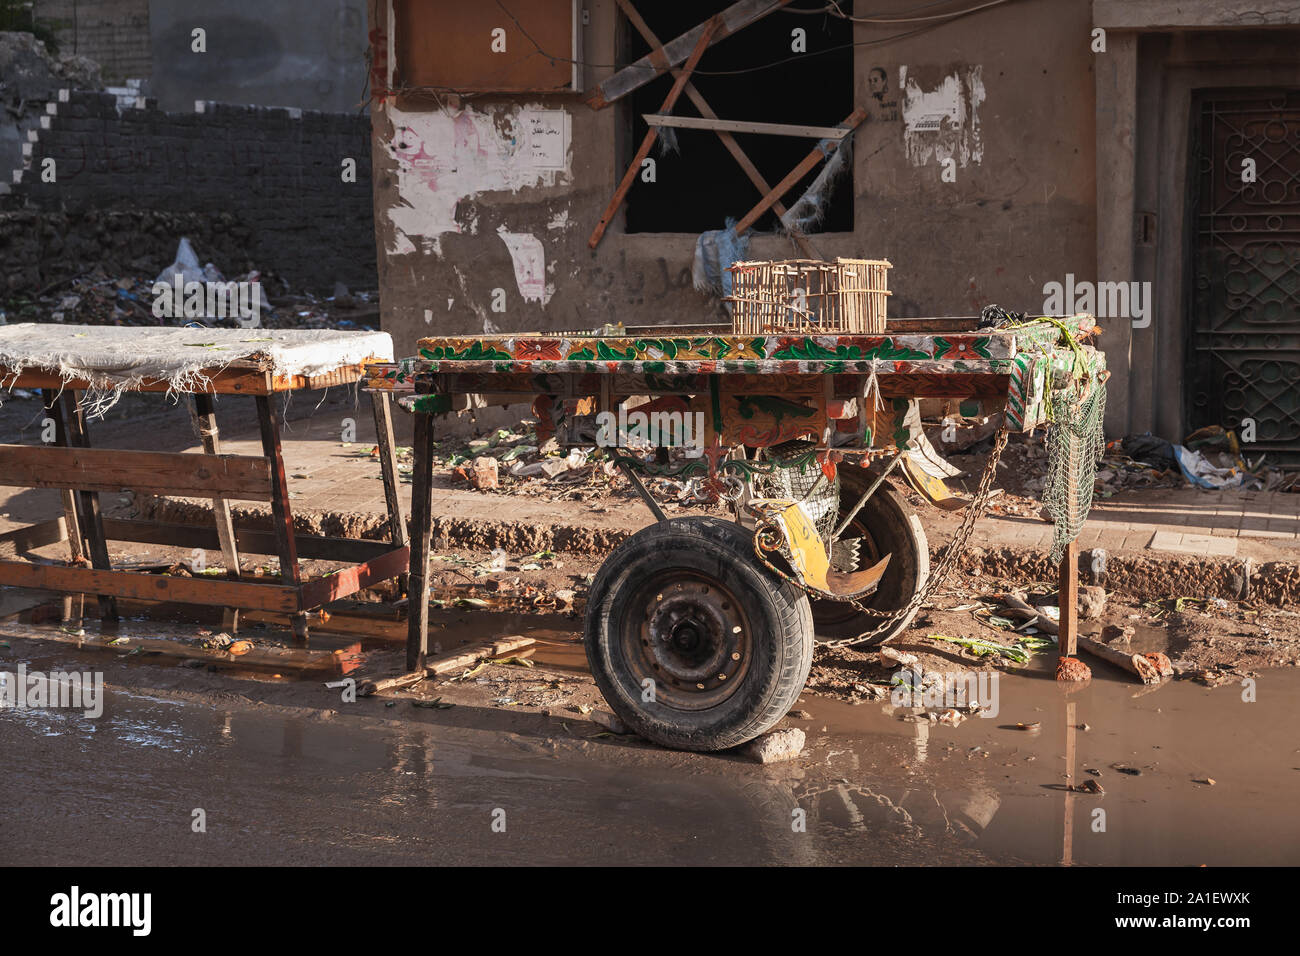 Alexandria, Ägypten - Dezember 18, 2018: Leere Holz von Pferden gezogene Wagen steht auf einer schmutzigen Straße von Alexandria Stockfoto